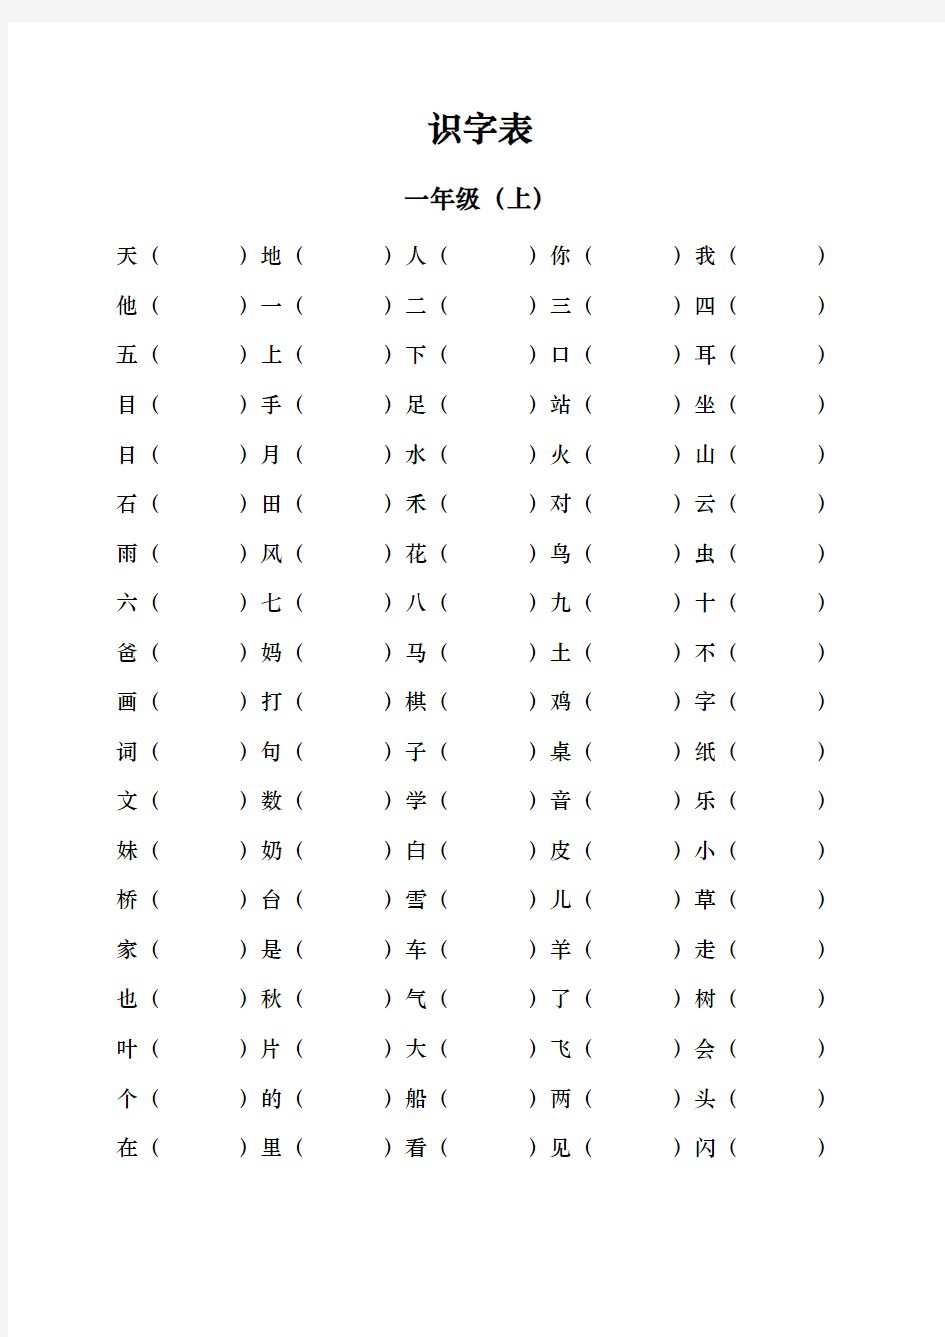 2016年人教版小学一年级(上)识字表(根据汉字练习写拼音)